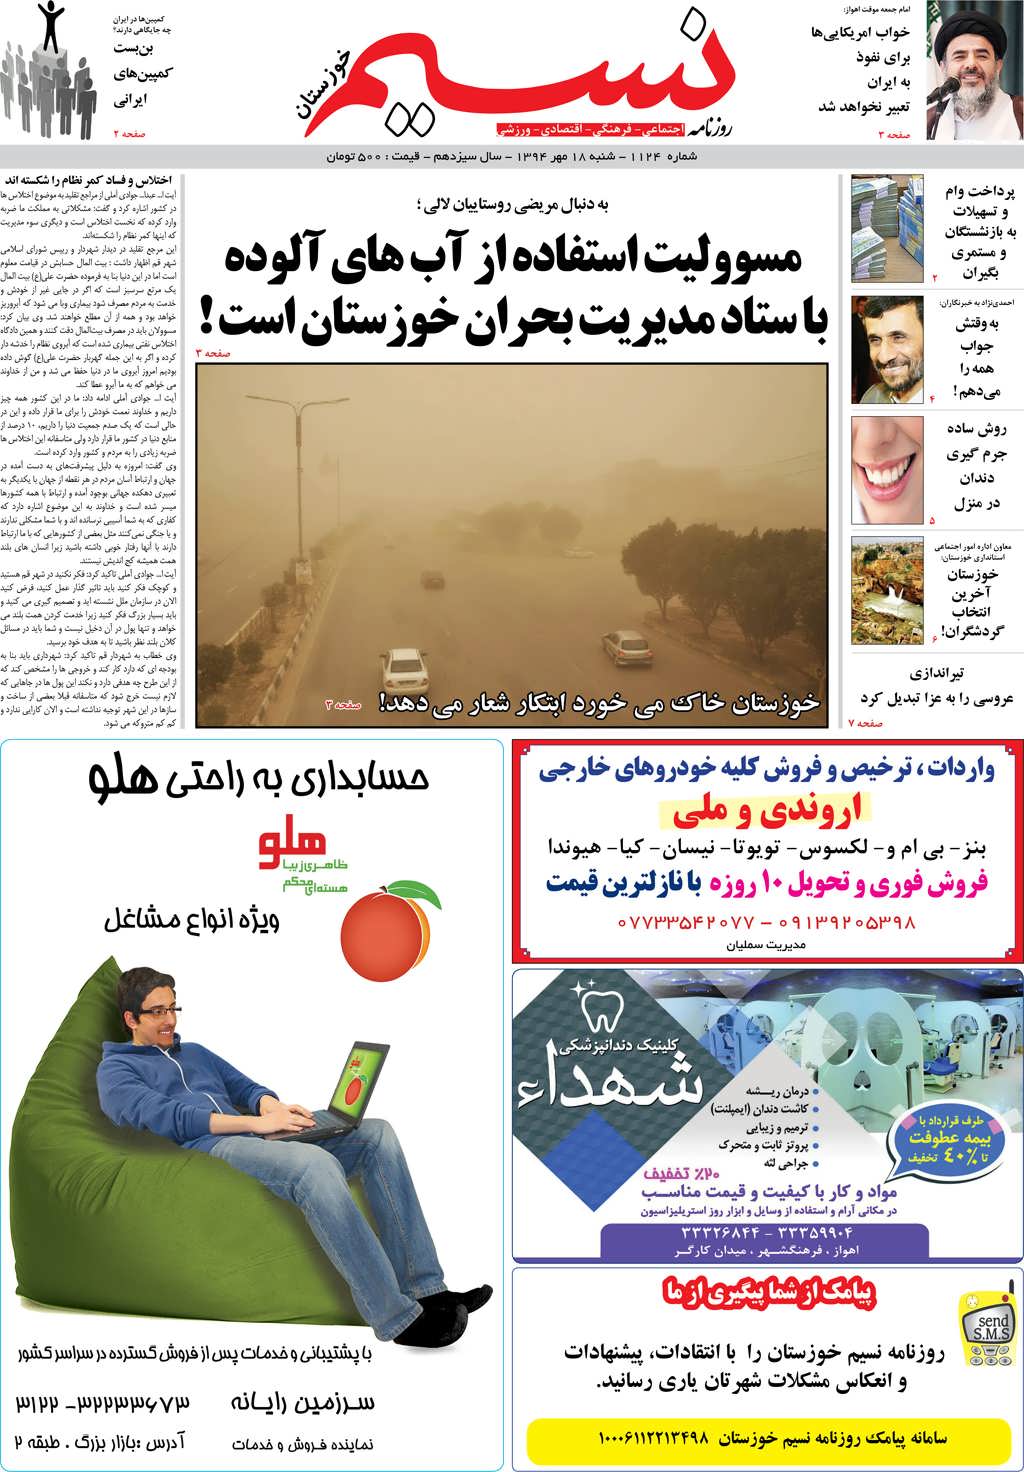 صفحه اصلی روزنامه نسیم شماره 1124